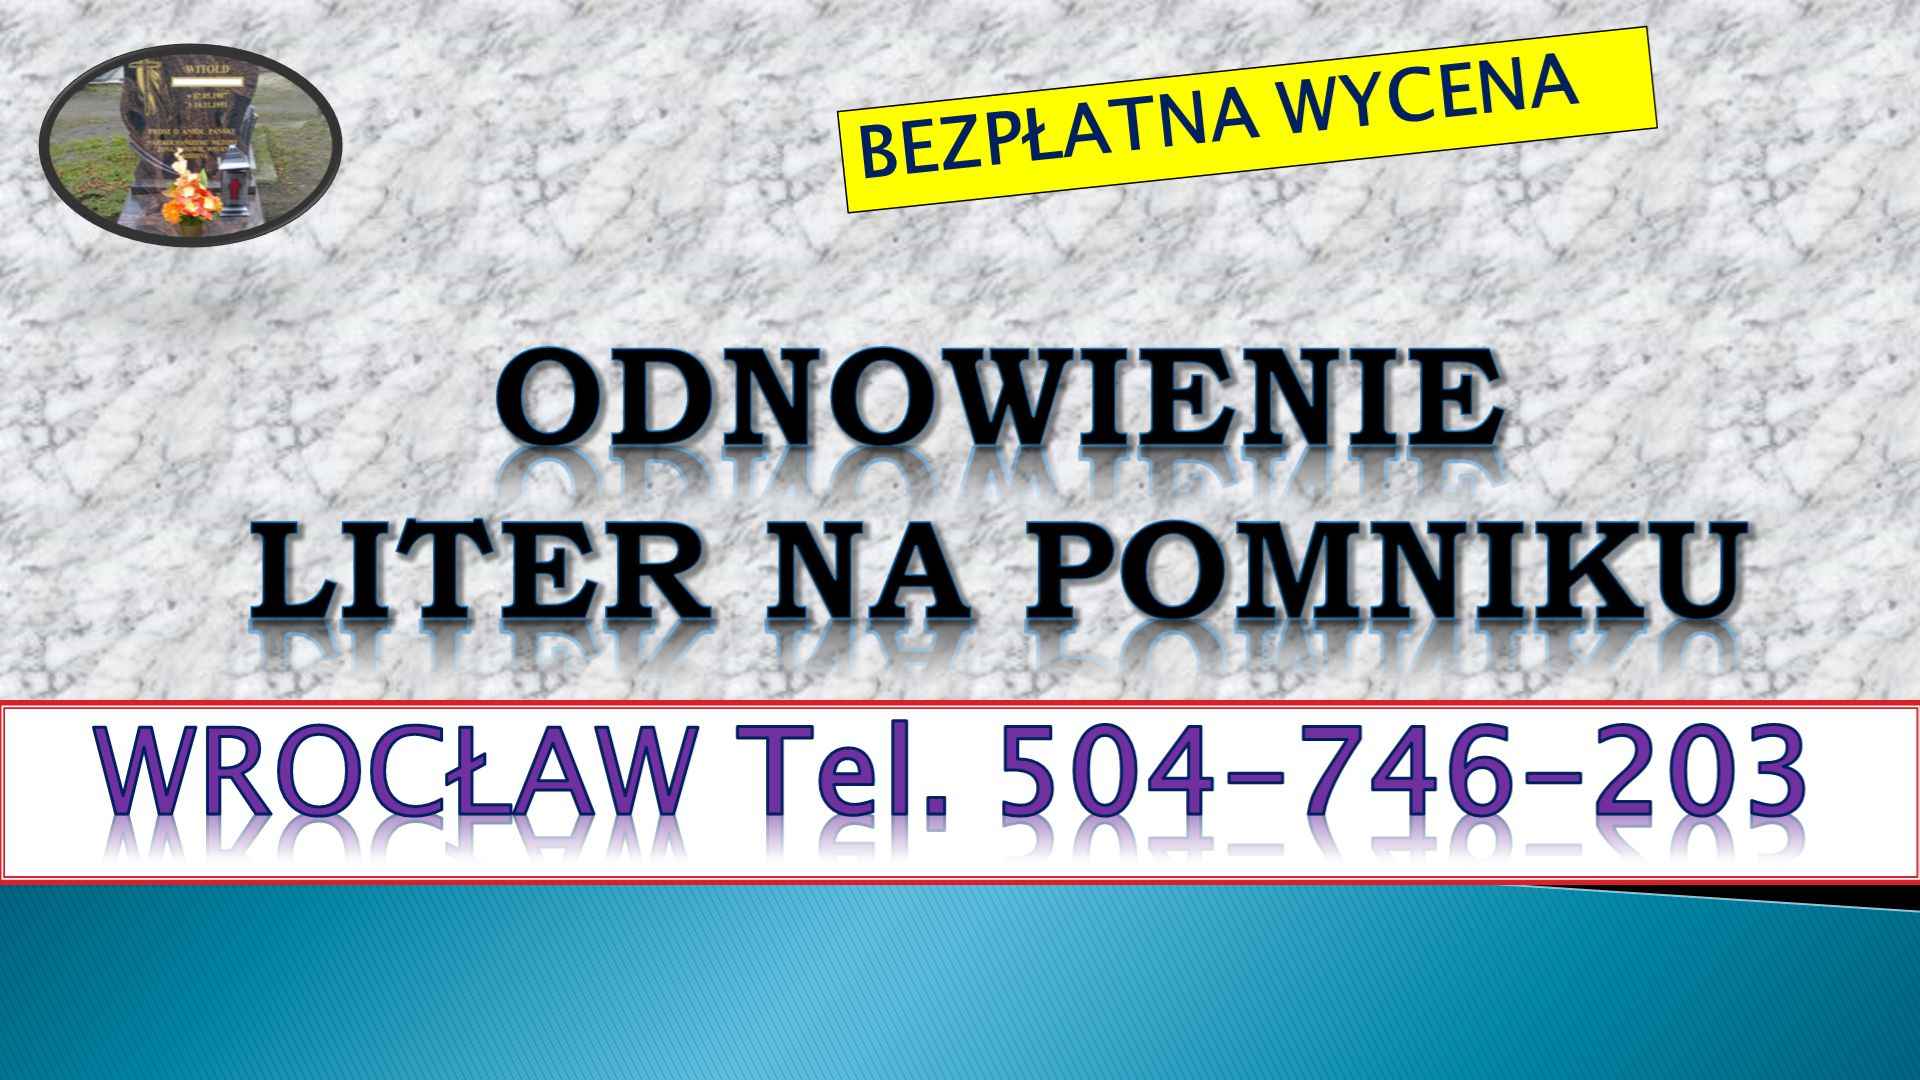 Dopisanie liter na pomniku, tel. 504-746-203, Wrocław, dodanie napisów Psie Pole - zdjęcie 2